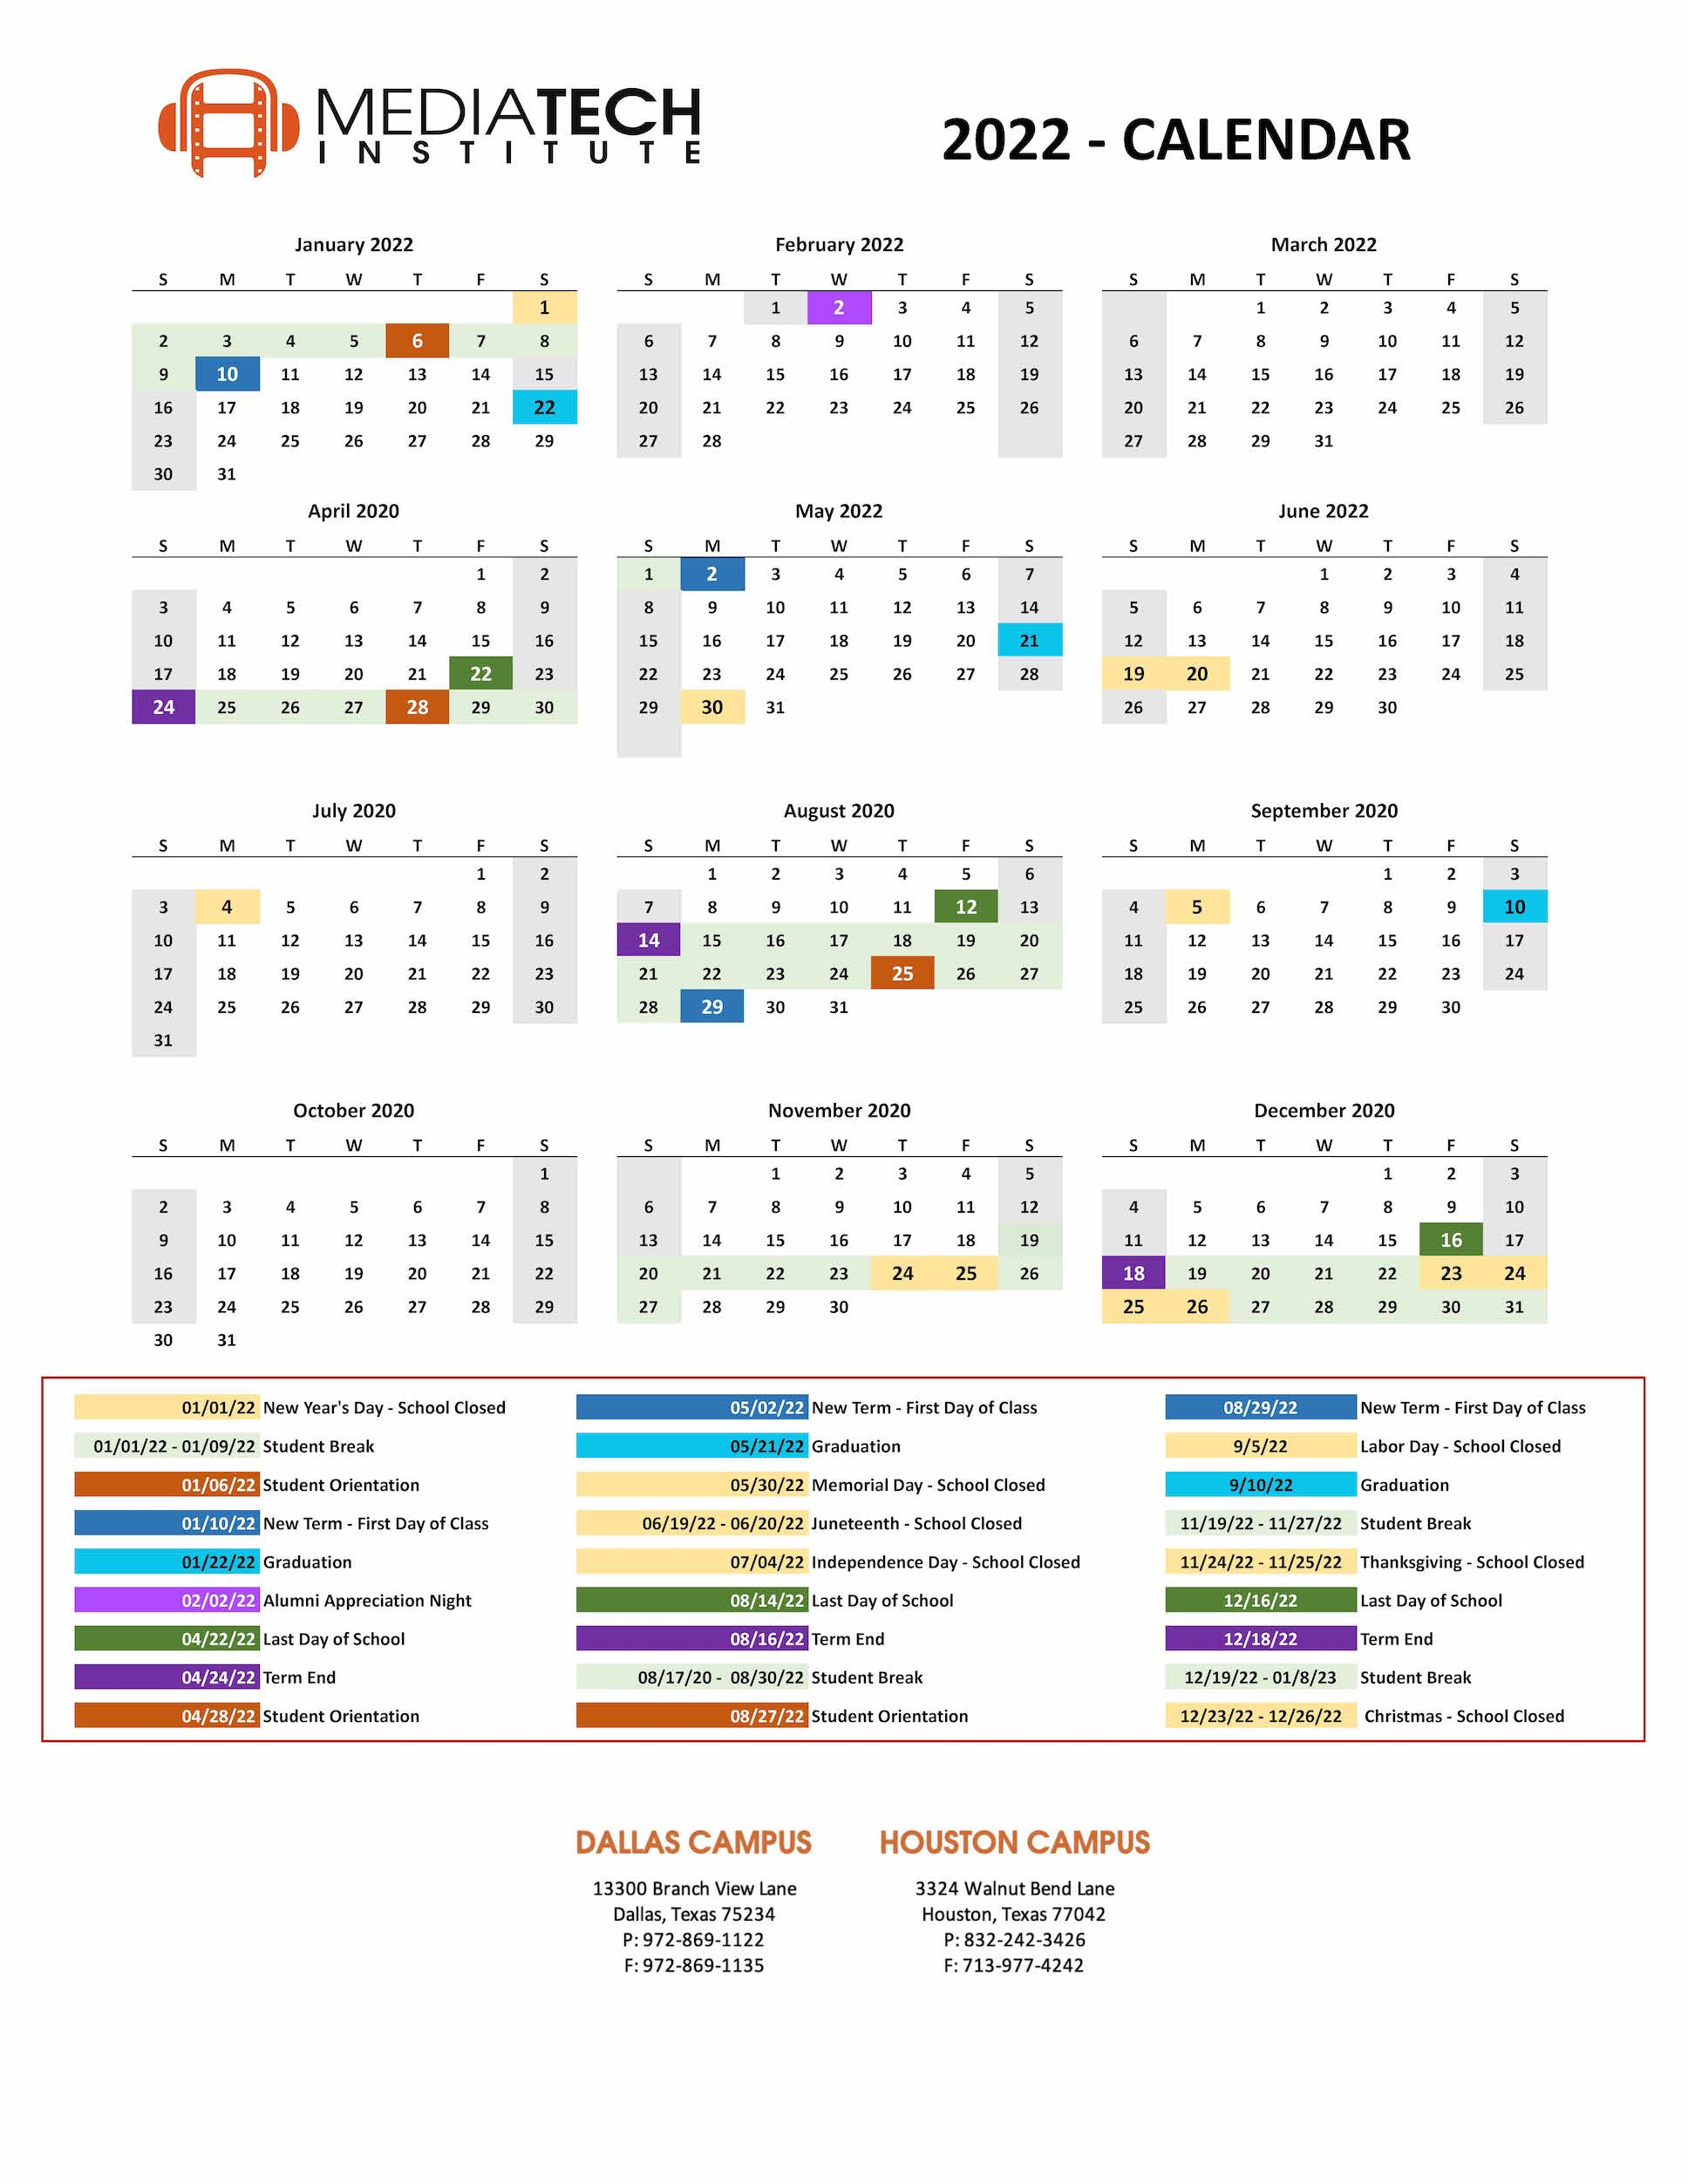 Academic Calendar Of Events - Mediatech Institute